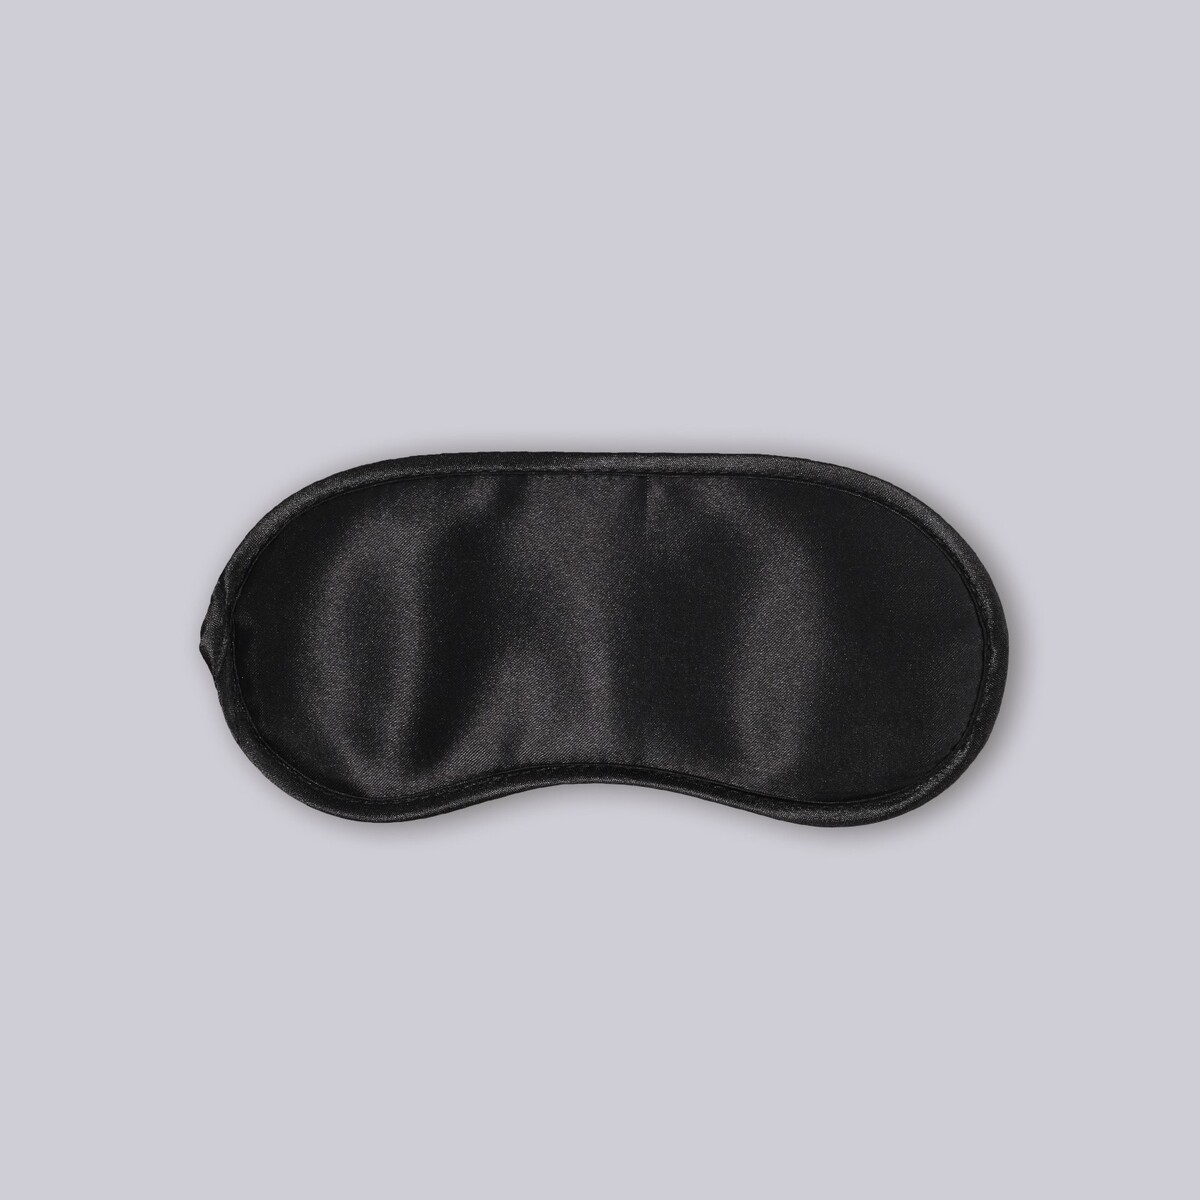 фото Маска для сна, сатиновая, двойная резинка, 19 × 8,5 см, цвет черный onlitop